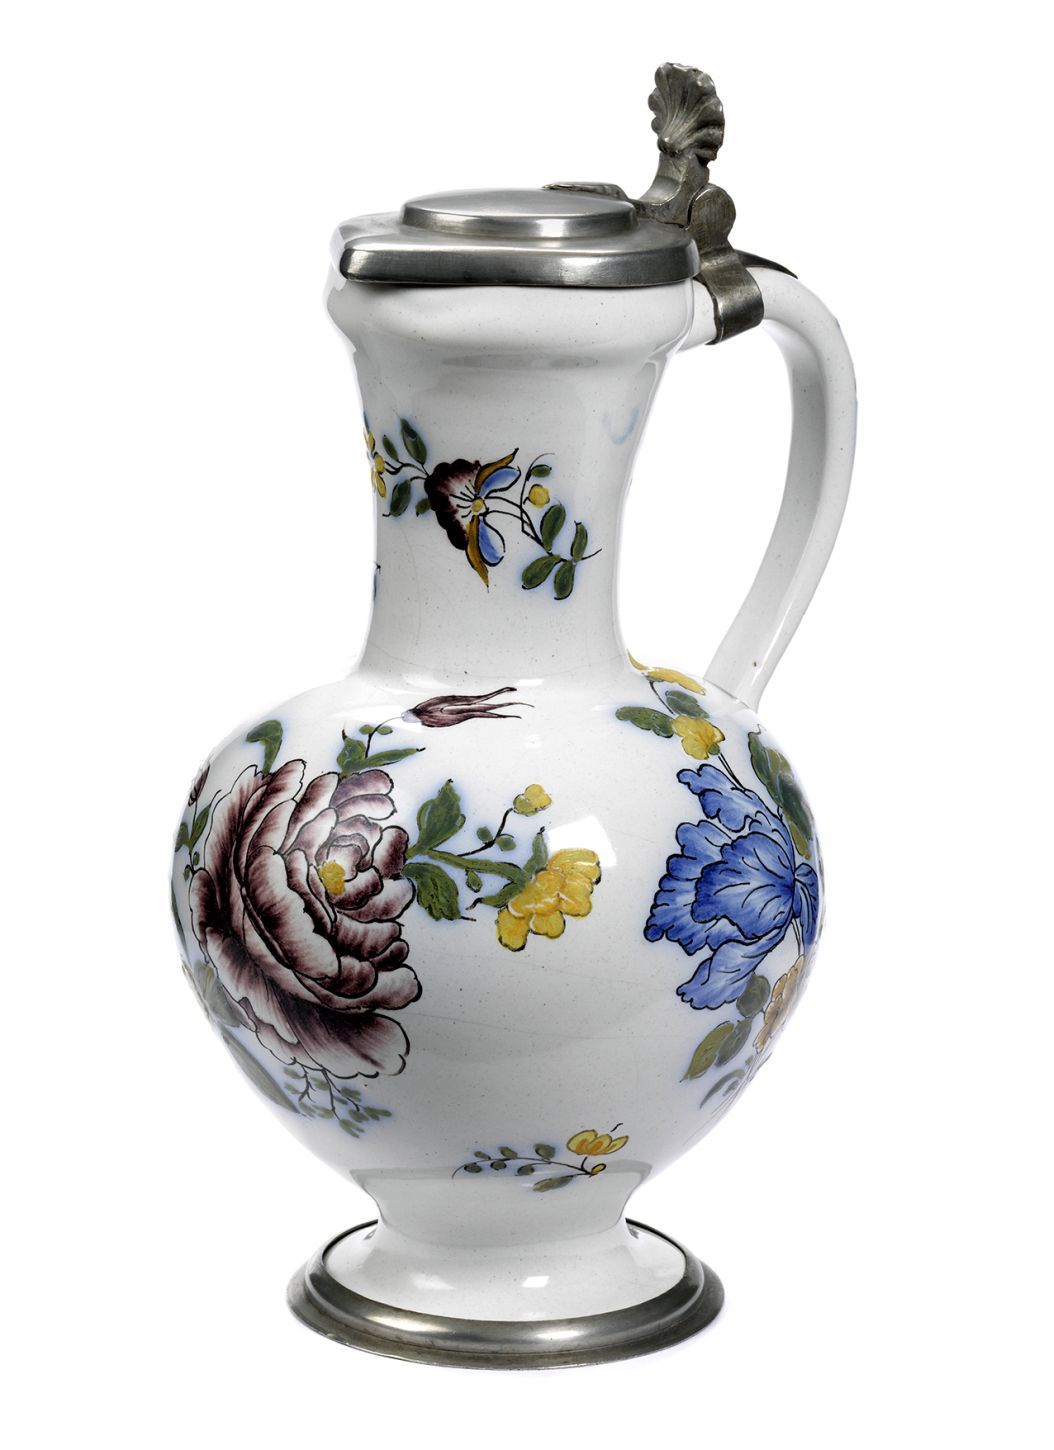 floersheim-german-faience-jug-flowers-18th-century